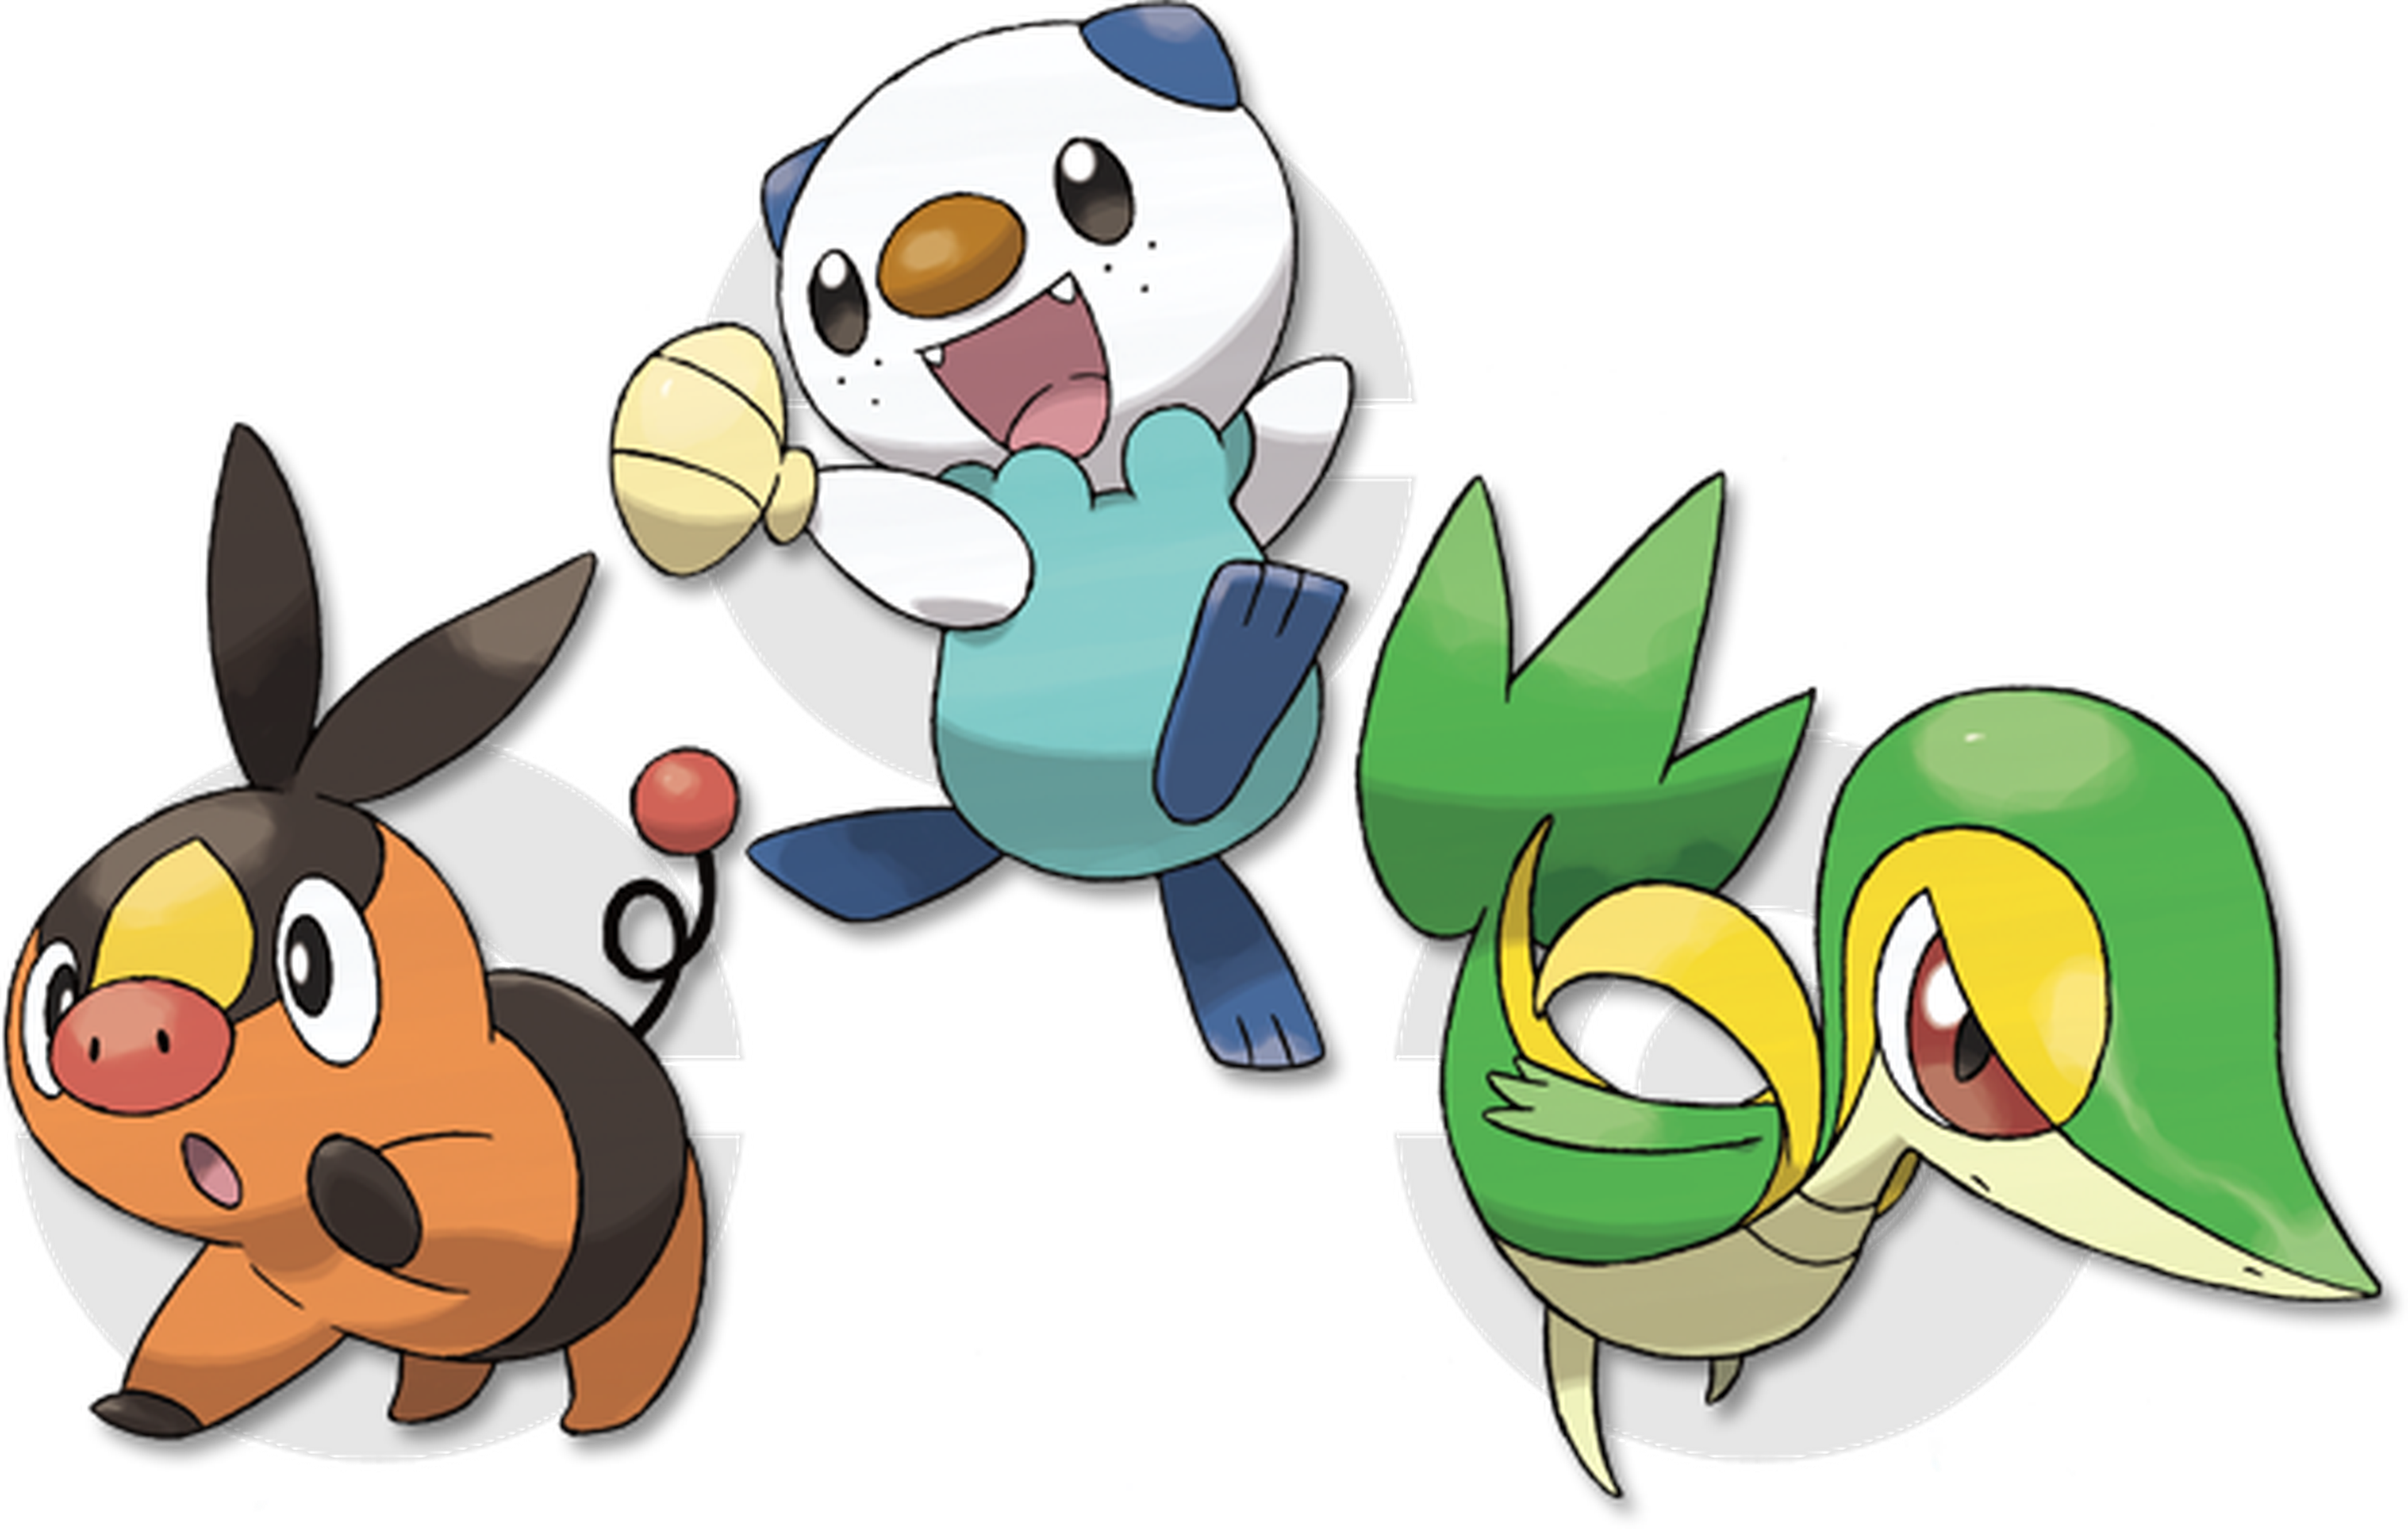 Pokémon X/Y: Chespin, Fennekin y Froakie a examen